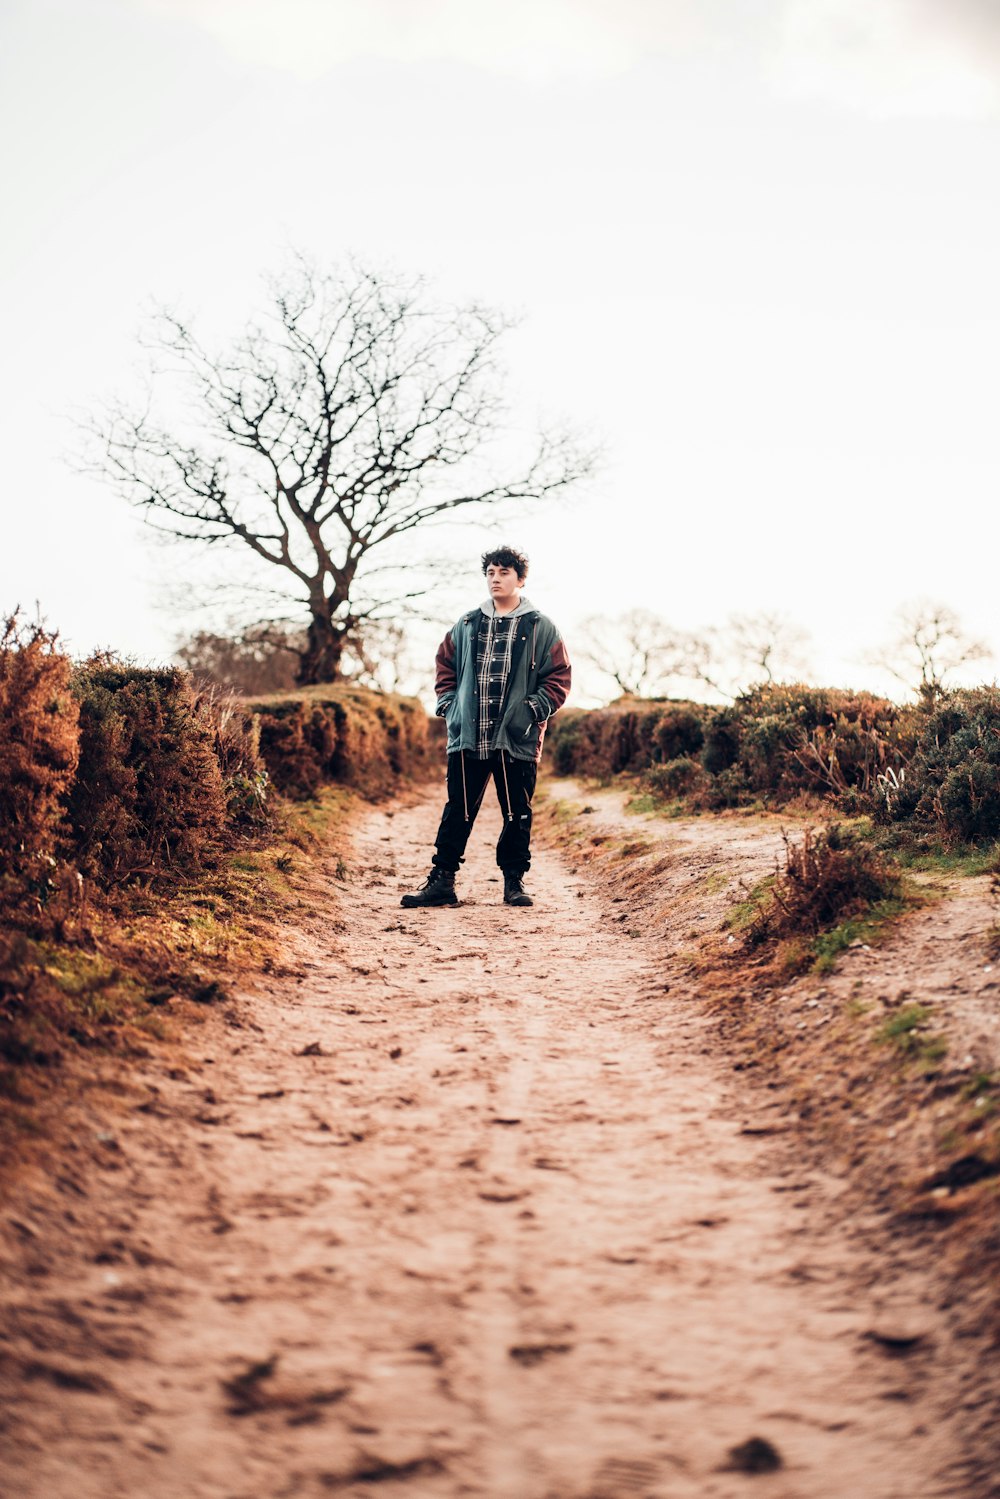 man in grey jacket walking on dirt road during daytime